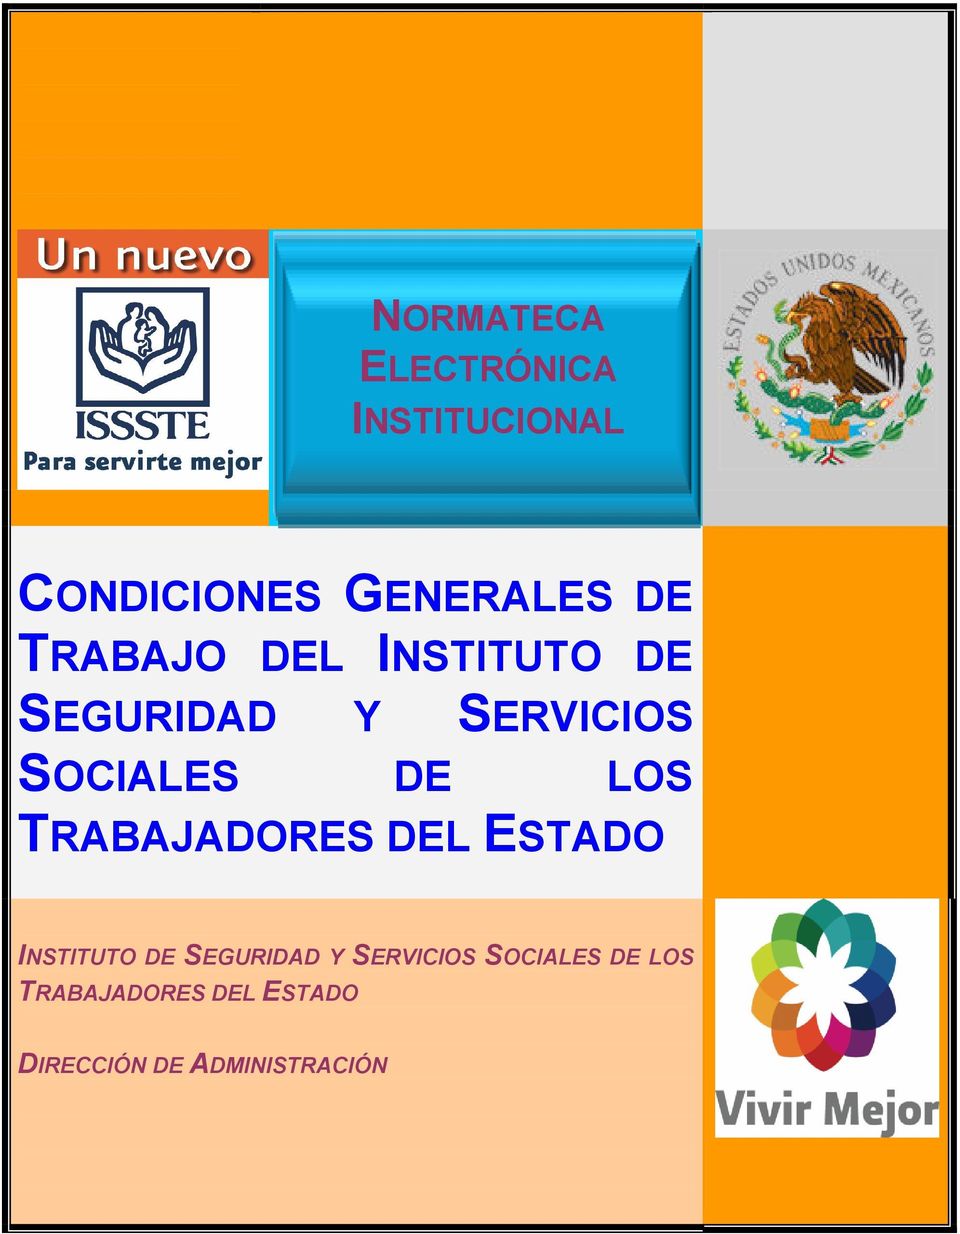 INSTITUTO DE SEGURIDAD Y SERVICIOS SOCIALES DE LOS